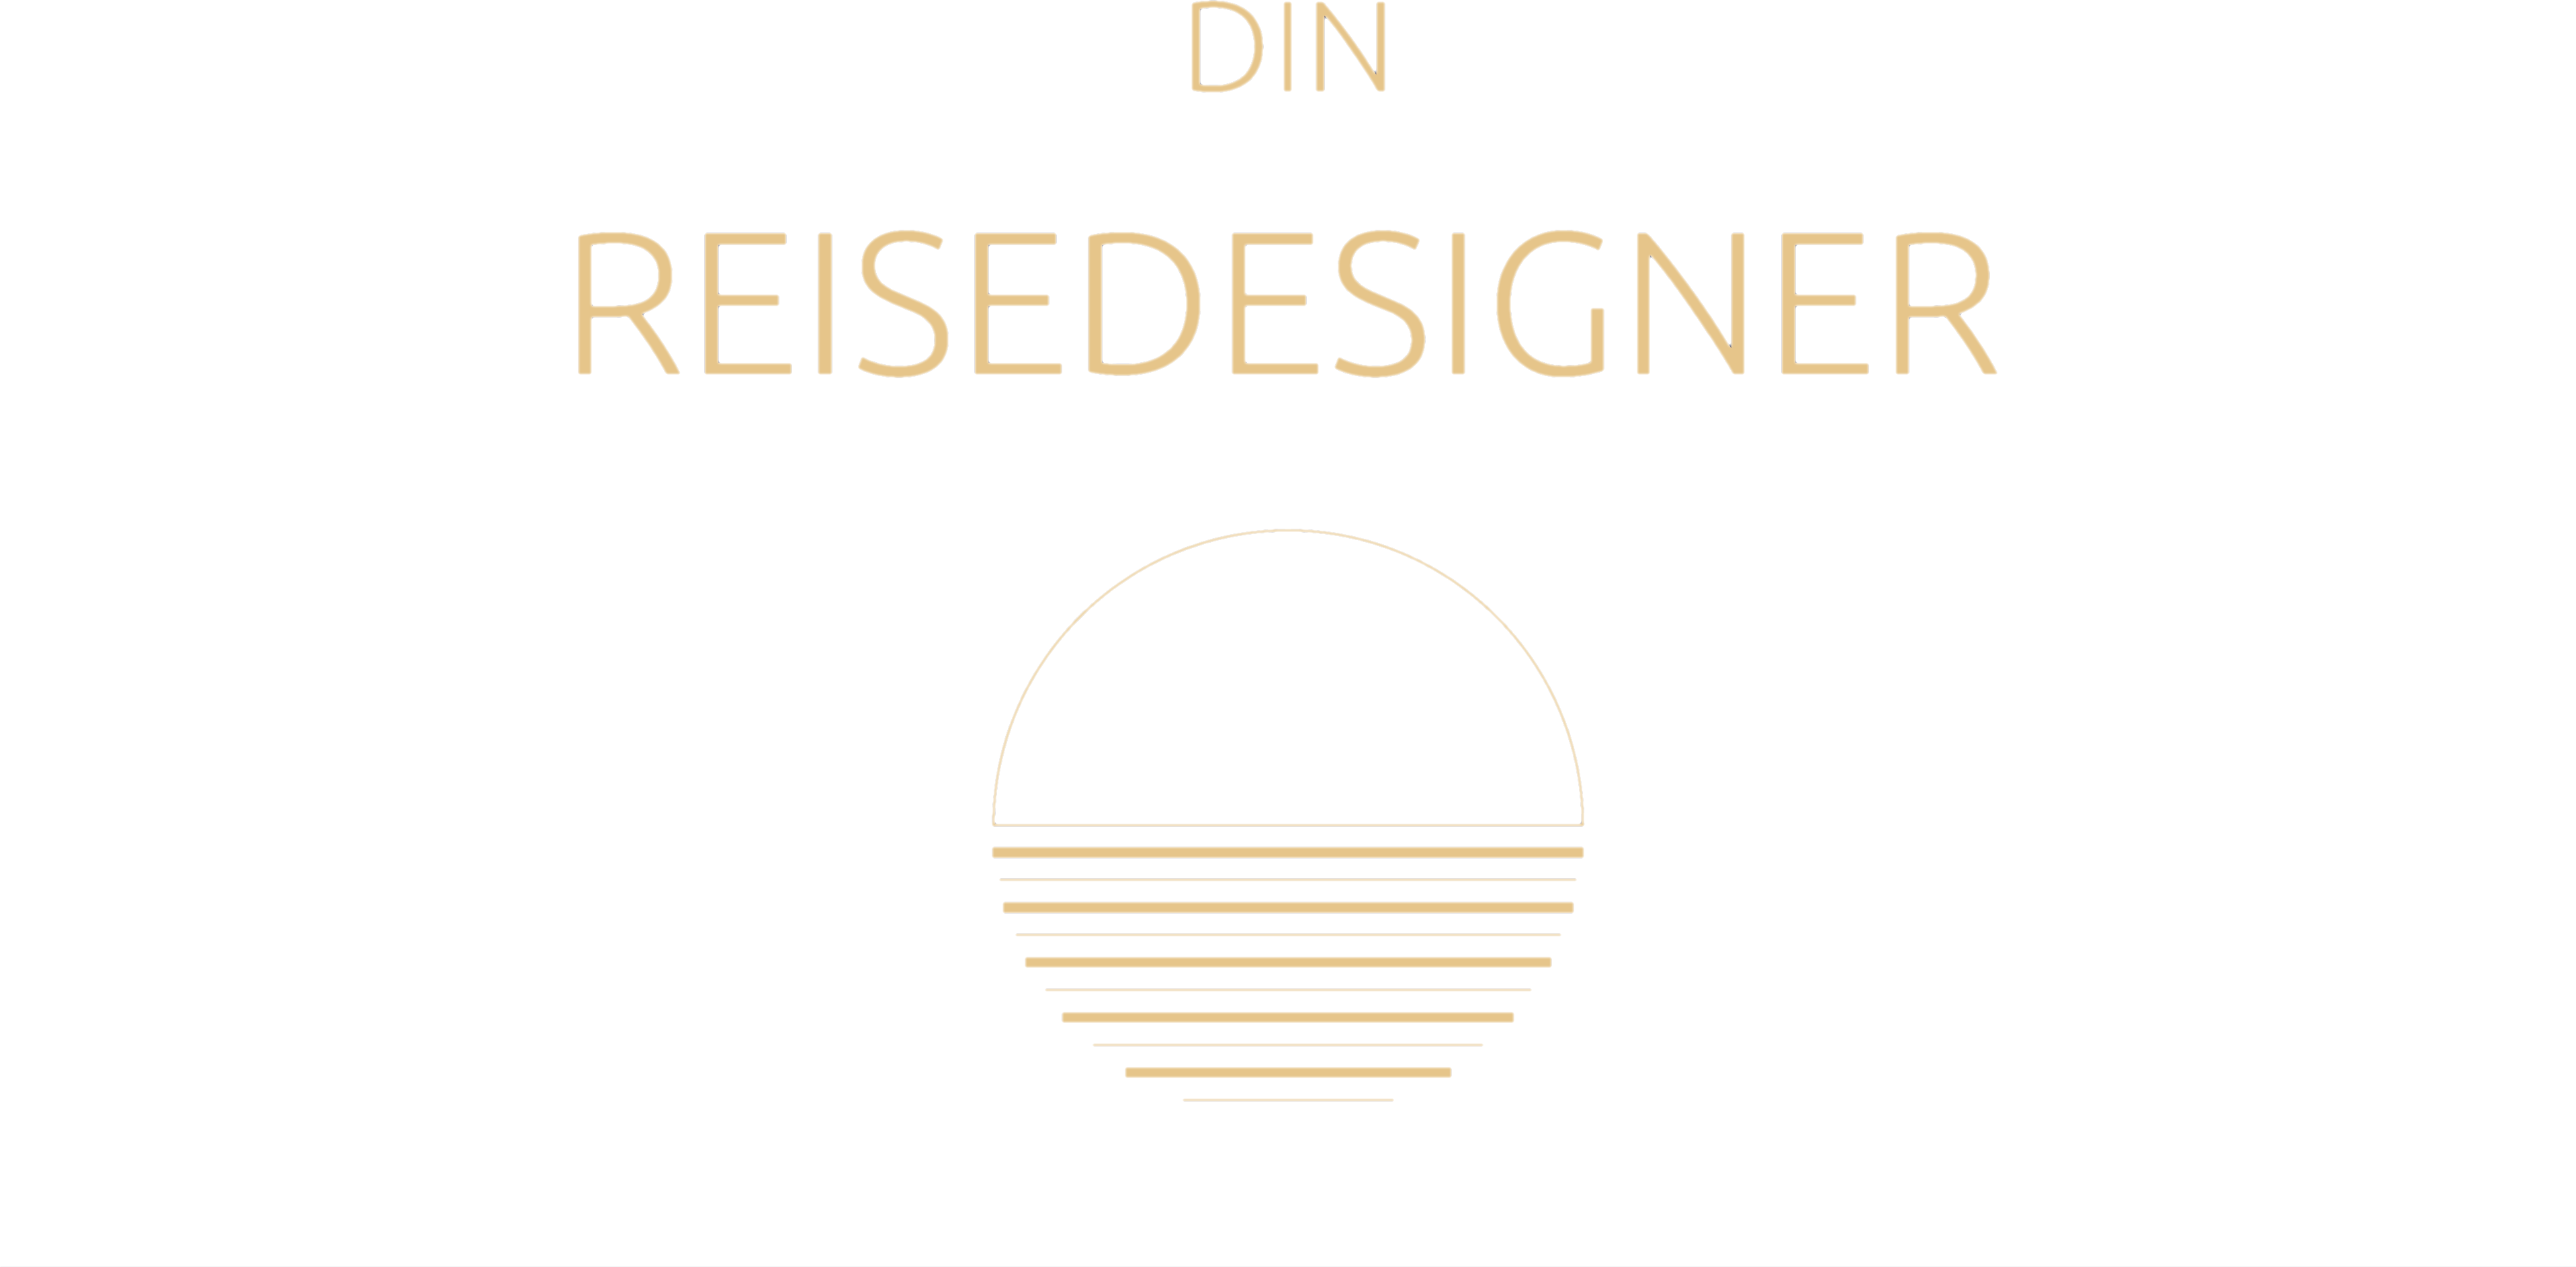 Din reisedesigner logo